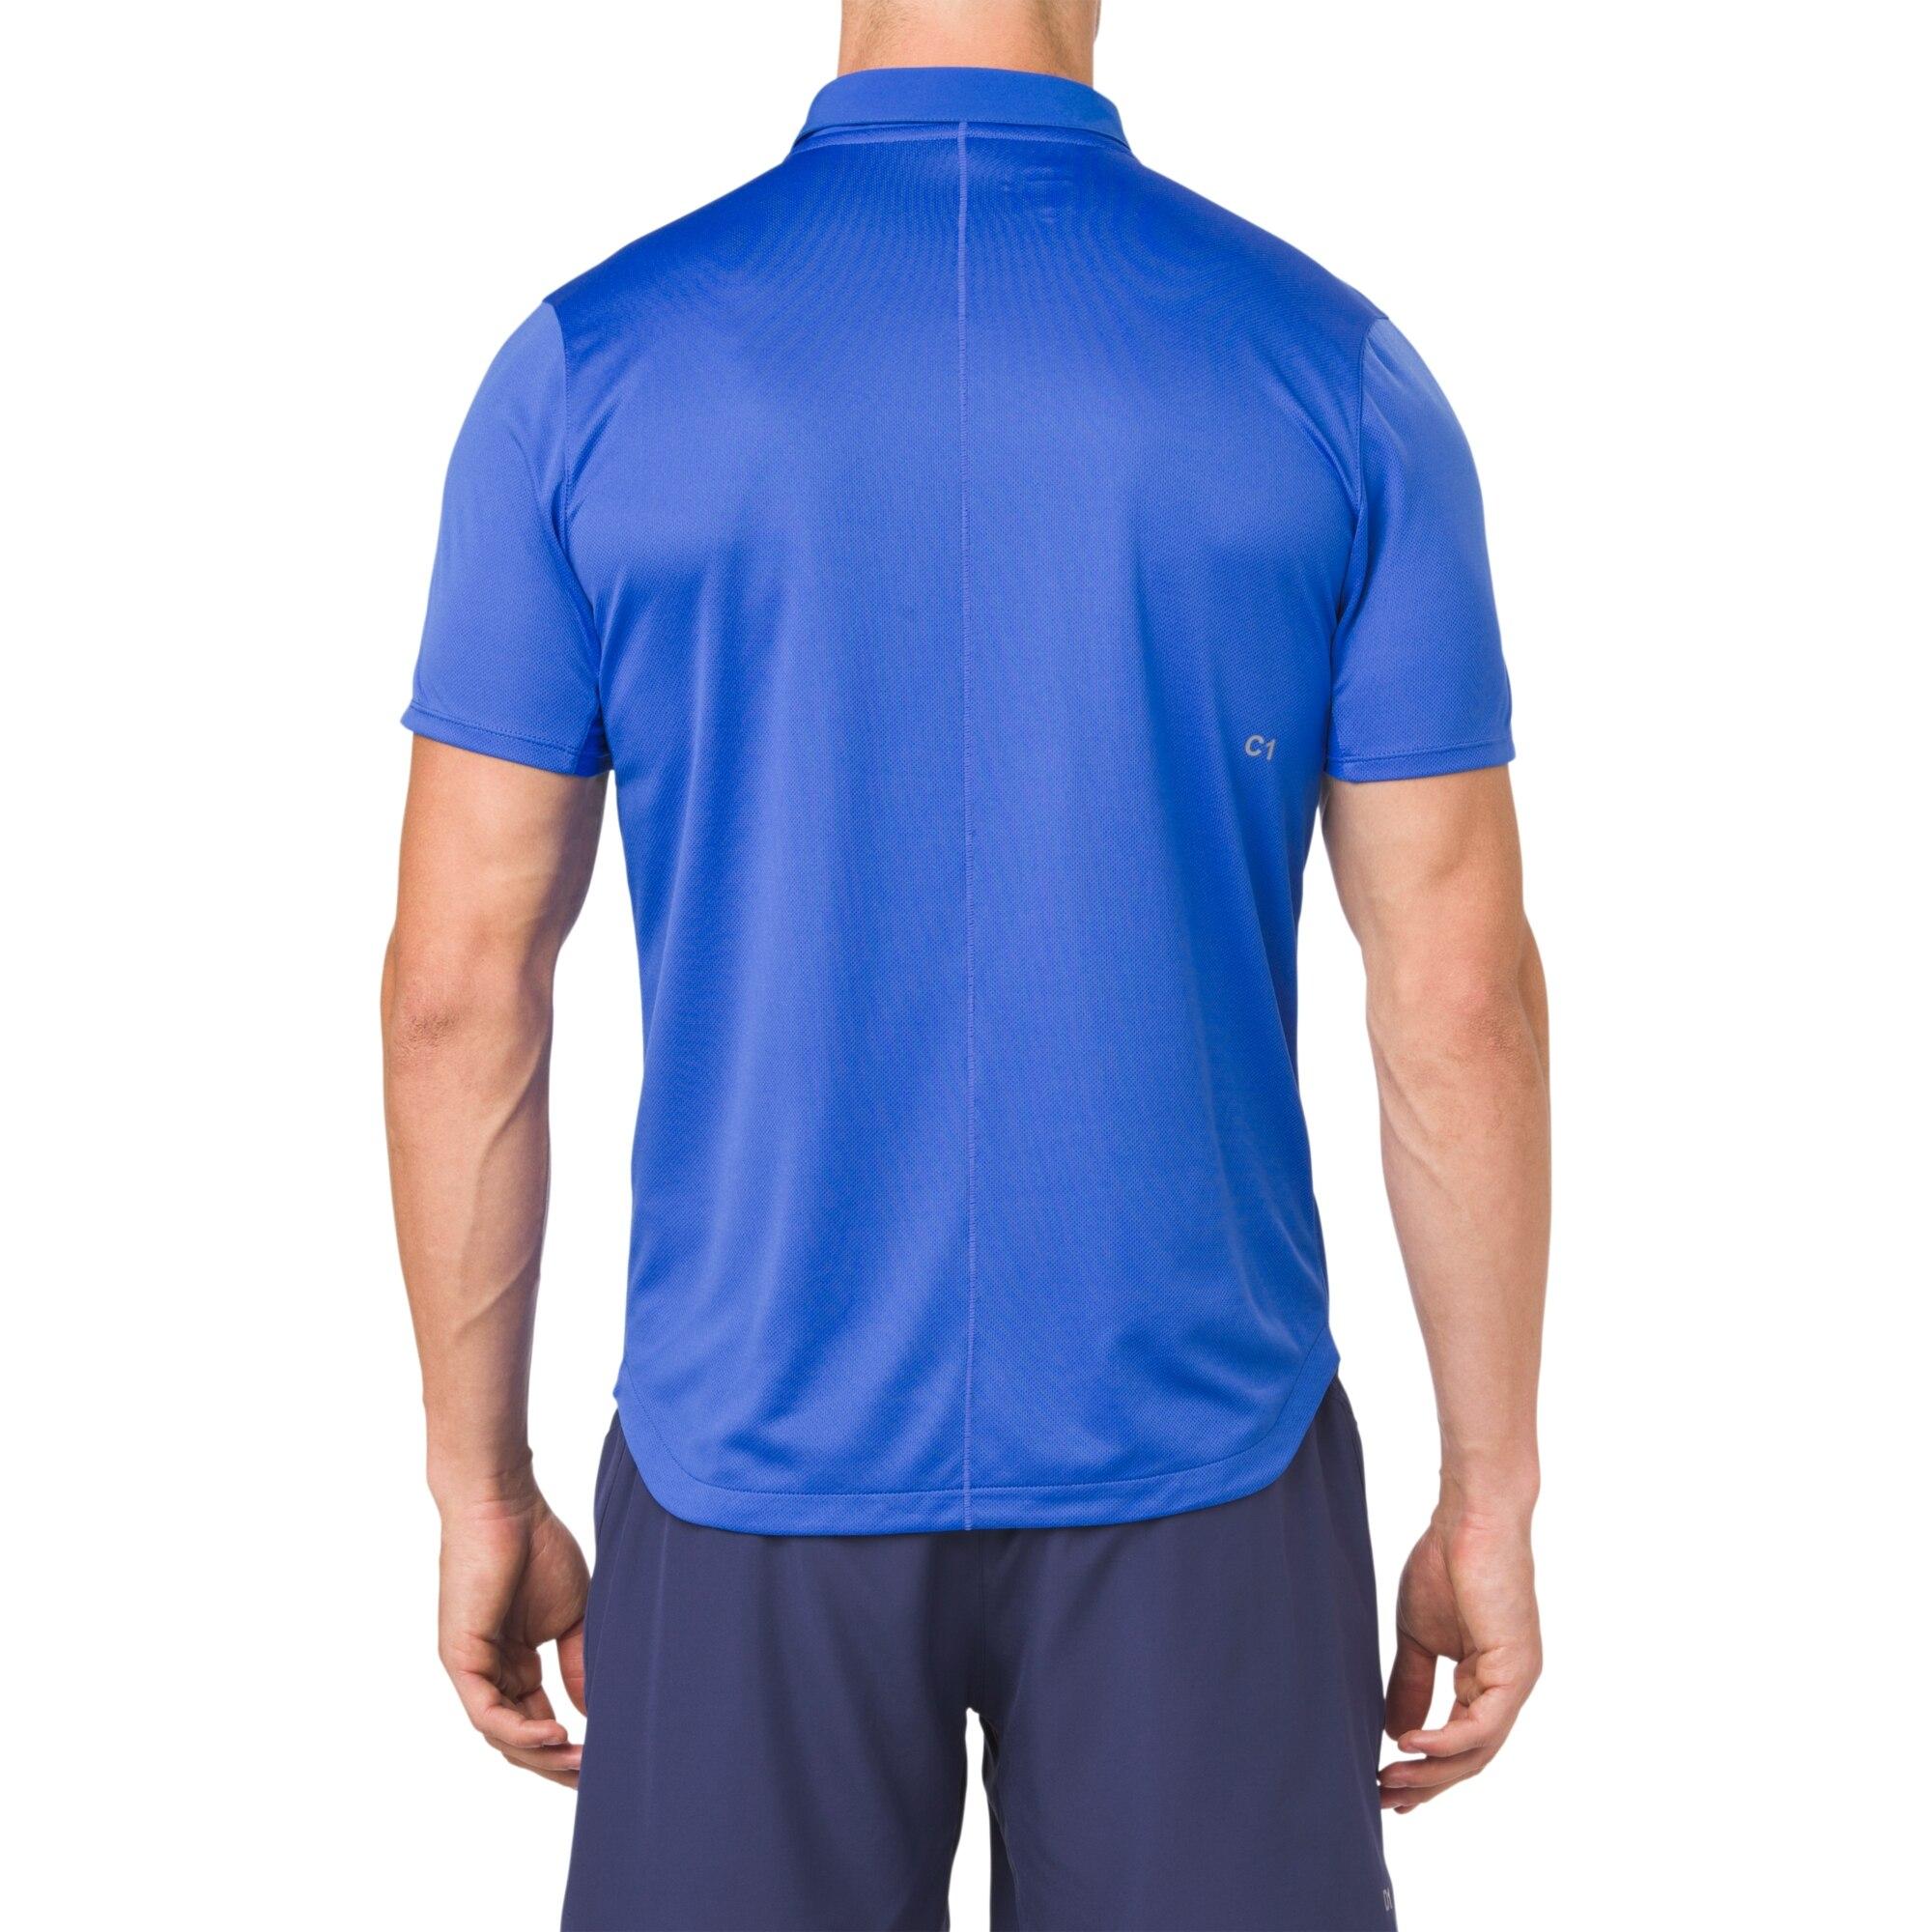 Asics Mens Club Polo Shirt - Illusion Blue - Tennisnuts.com